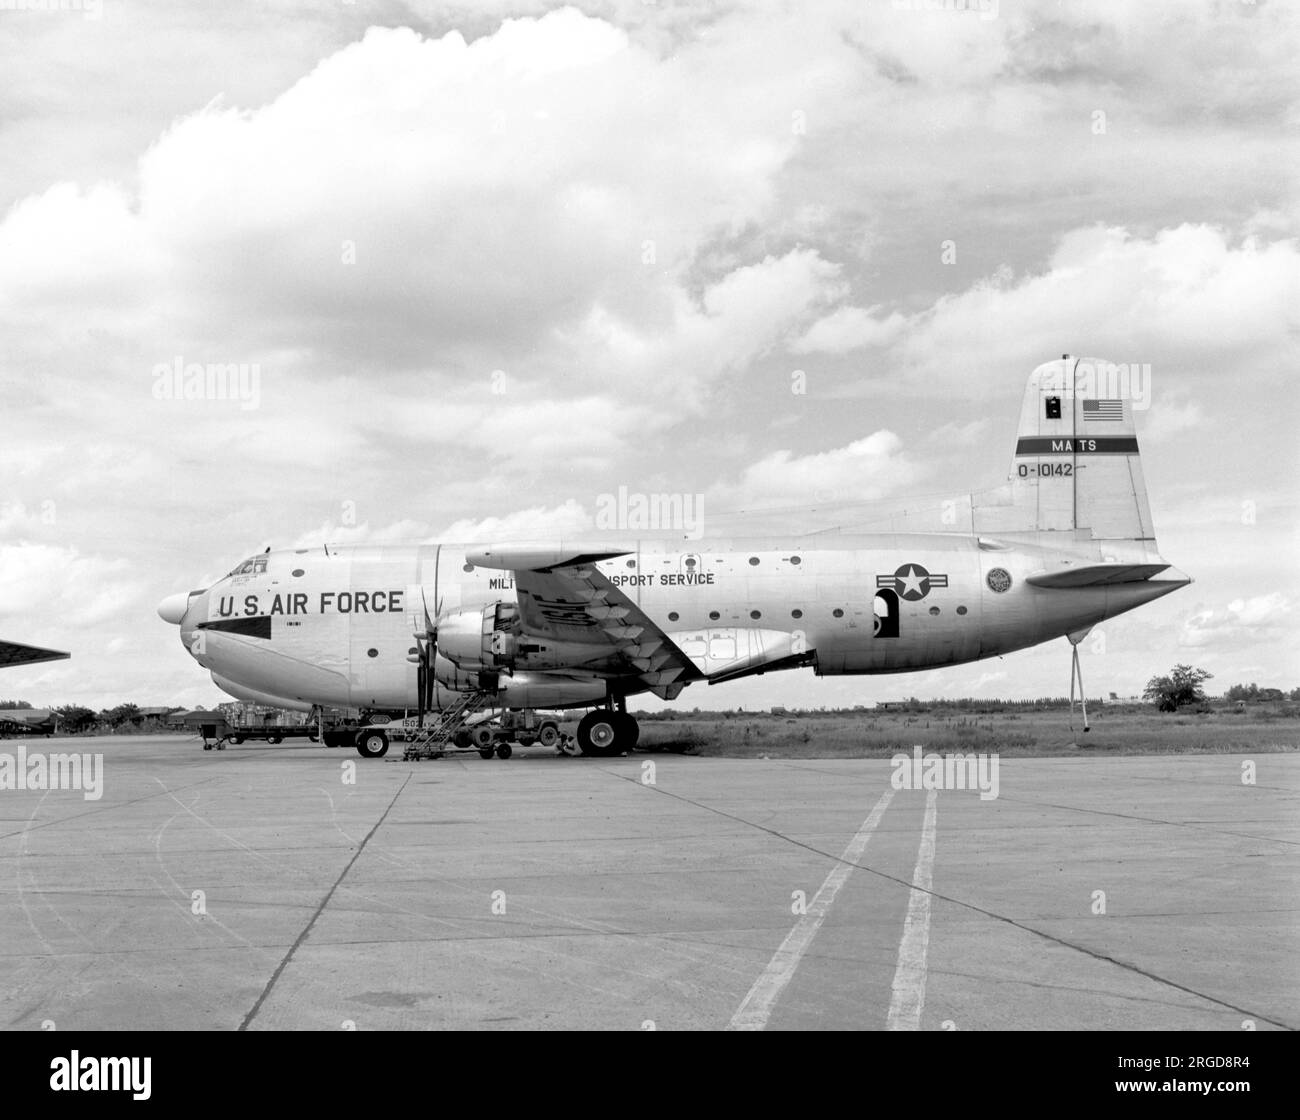 United States Air Force - Douglas C-124C-DL Globemaster II 51-0142 (msn 43476), de la 1502 Air transport Wing à Don Muang Royal Thai Air Force base en août 1965. (Marqué comme O-10142 - O=Obsolète, souvent utilisé pour les avions plus anciens dans l'inventaire de l'USAF dans les années 50 et 60) Banque D'Images